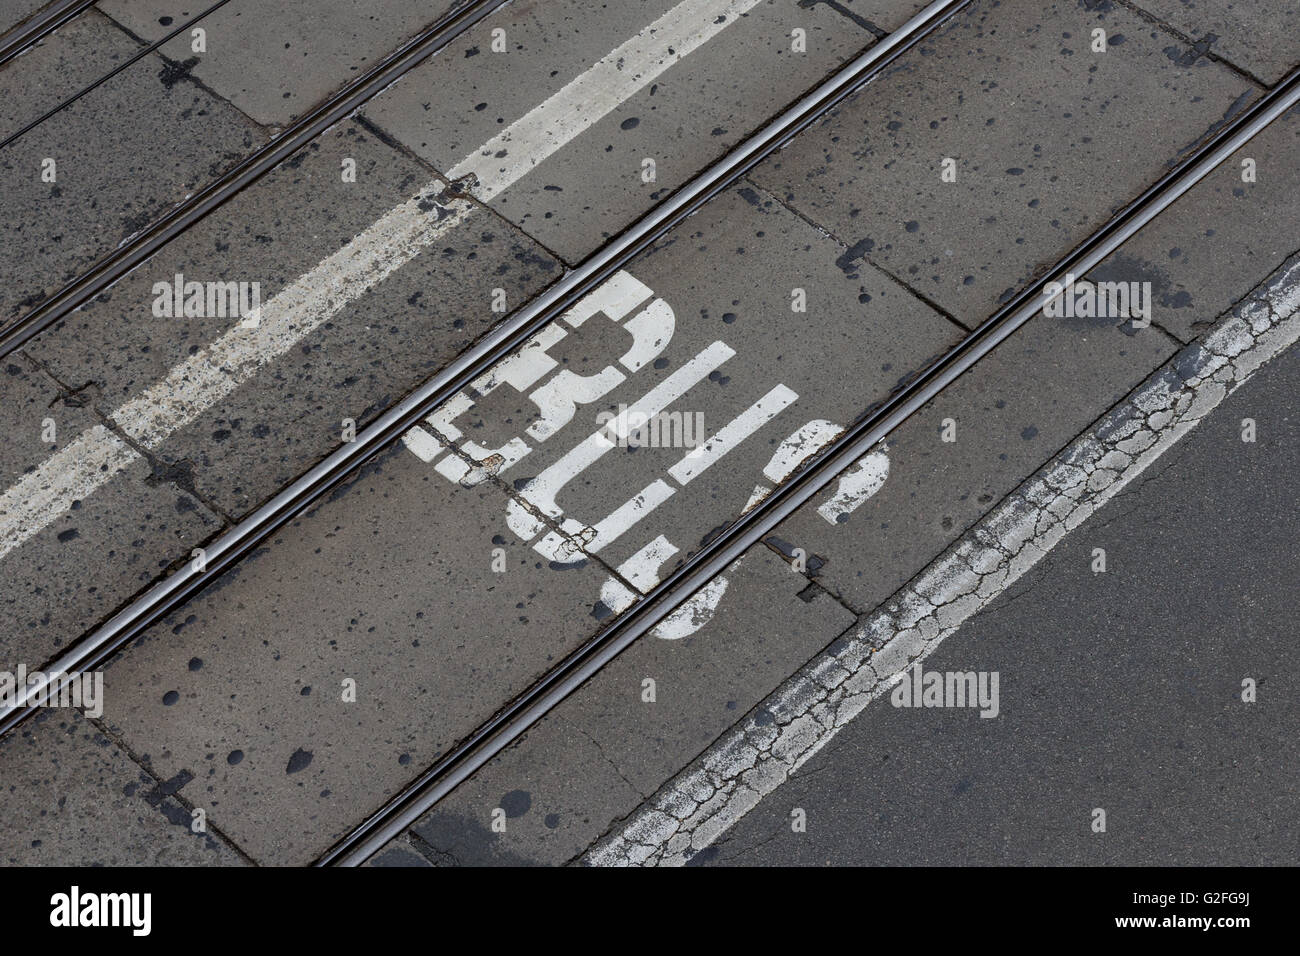 Corsia degli autobus - la parola scritta sulla strada asfaltata Foto Stock